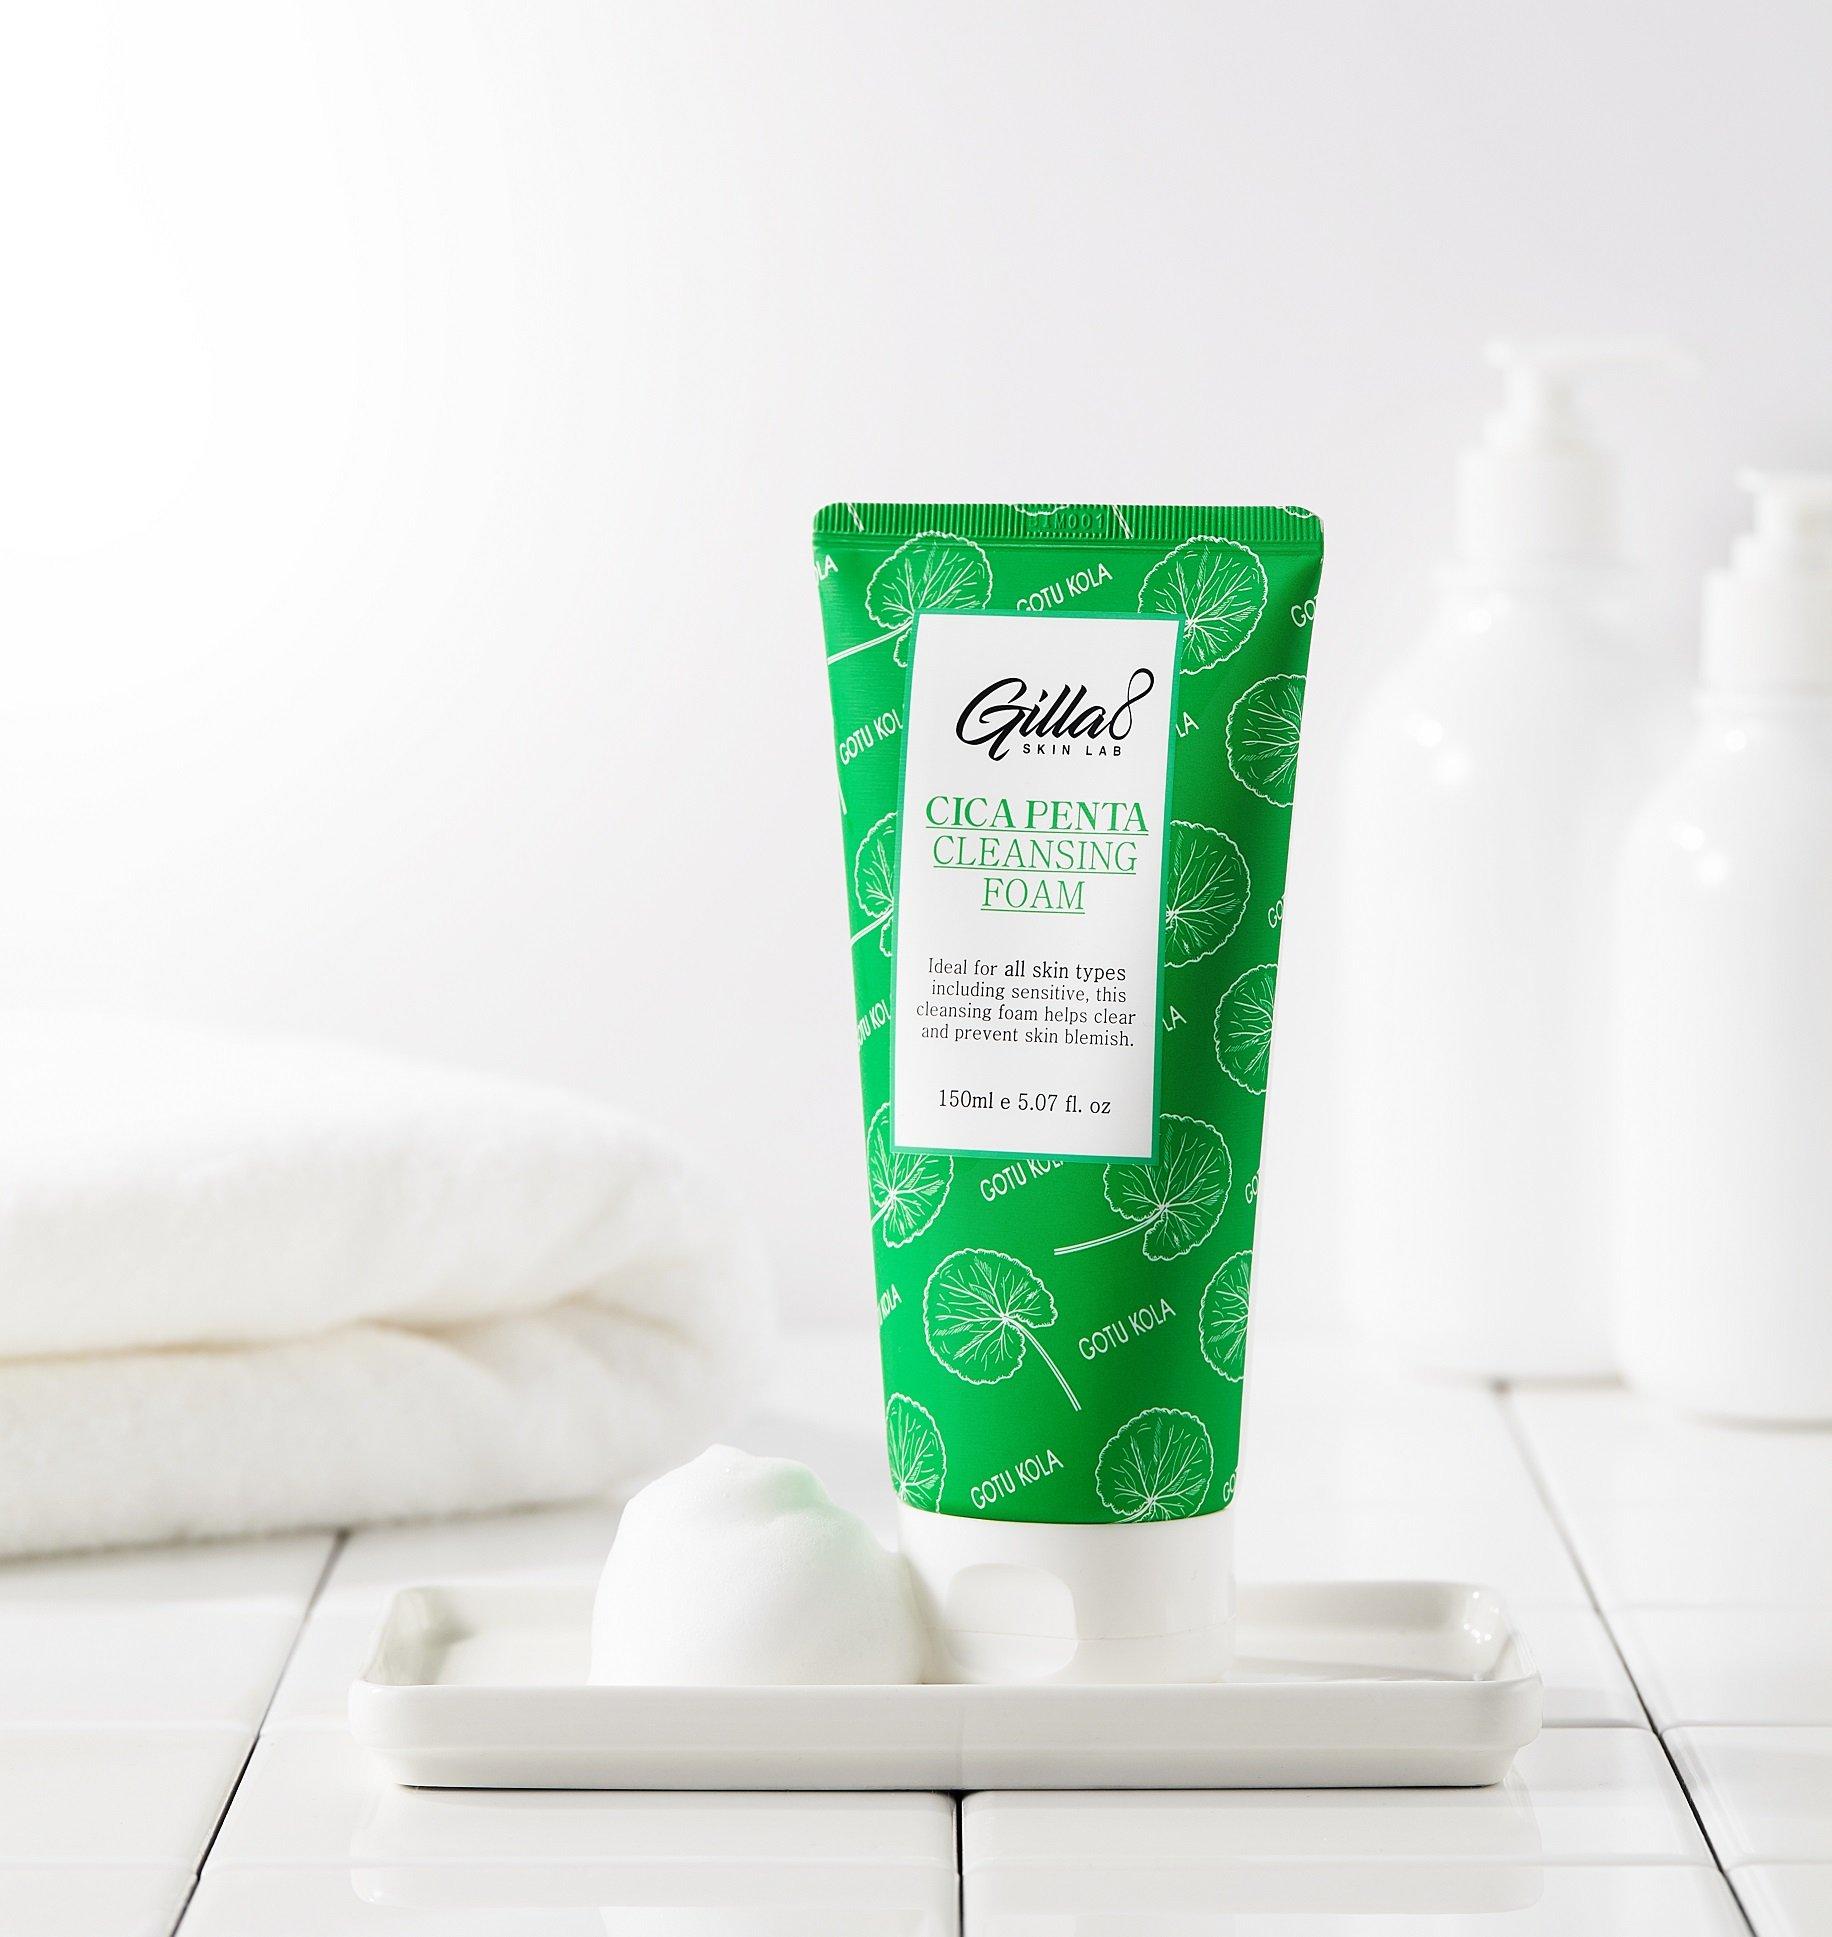 Sữa rửa mặt rau má Gilla8 giúp ngăn ngừa mụn, đồng thời cũng tăng cường thêm độ ẩm cho làn da (Nguồn: Internet).